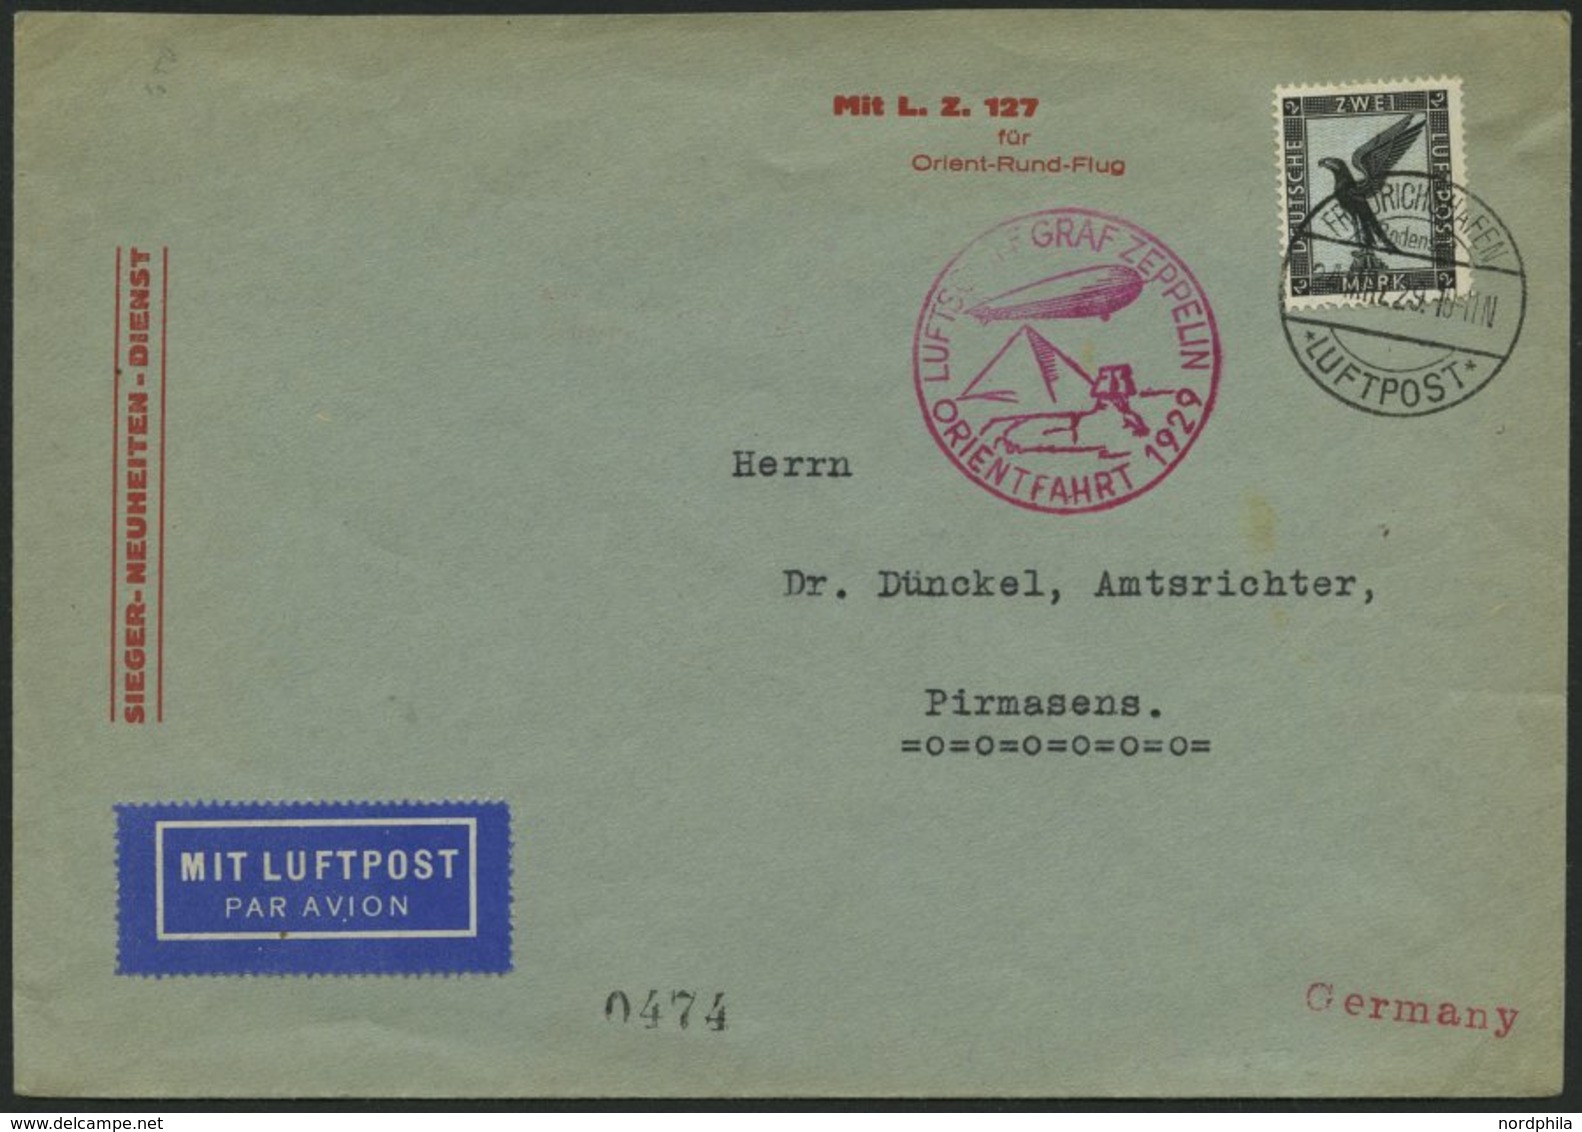 ZEPPELINPOST 23IA BRIEF, 1929, Orientfahrt, Auflieferung Fr`hafen, Frankiert Mit Einzelfrankatur Mi.Nr. 383, Pracht - Zeppelins